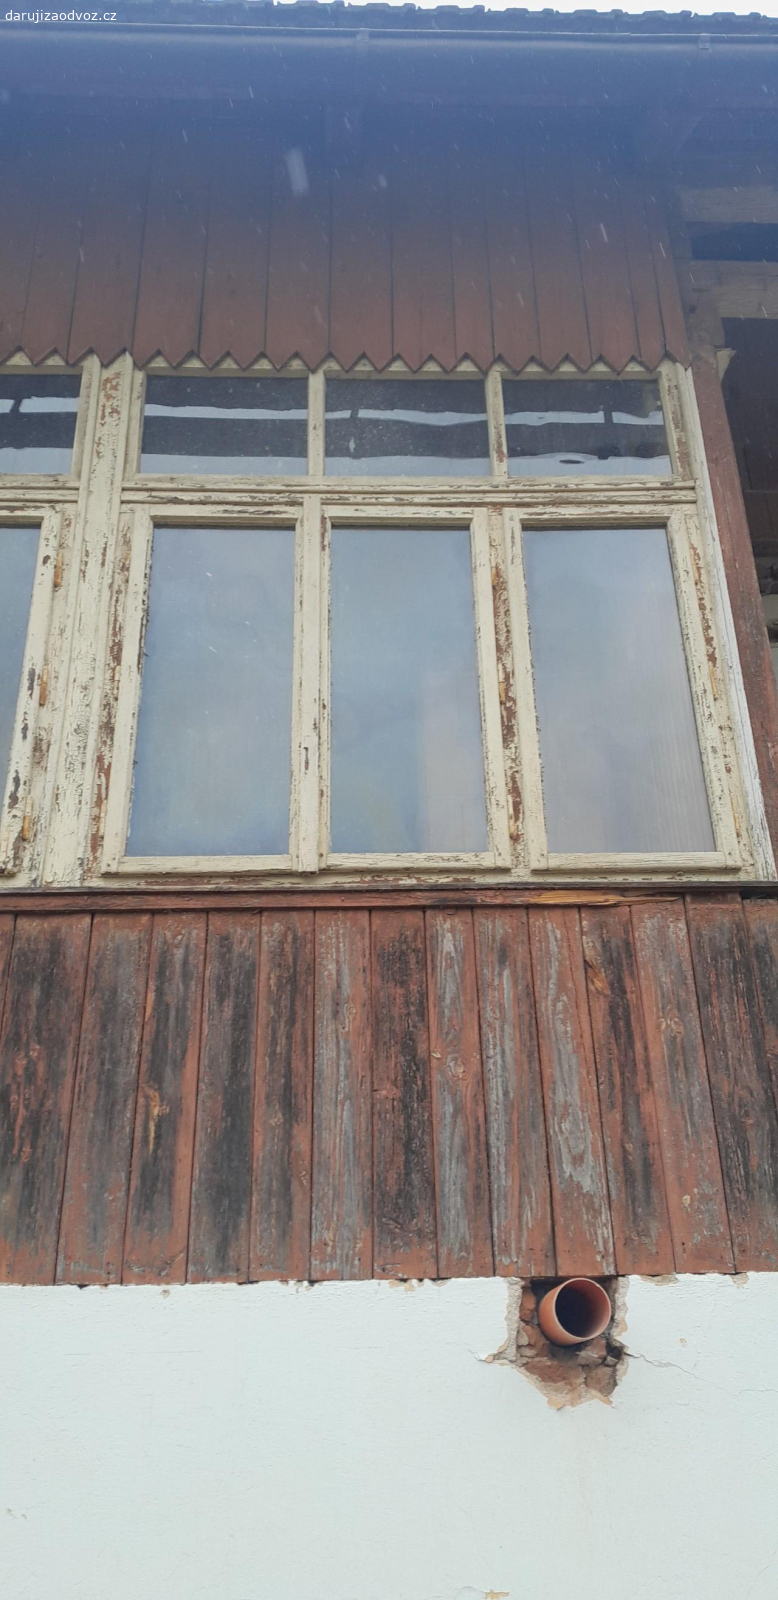 Okna špaletová a jednoduchá. Daruji stará špaletová a jednoduchá okna z rekonstruovaného domu. 
Špaletové okno - zděná špaleta - dvoukřídlé 122,5 x 151 cm... 2 ks, 121 x 150 cm... 1ks, 
Špaletové okno - dřevěná špaleta - tříkřídle 182 x 140... 2 ks, 
Špaletové okno - zděná špaleta - venkovní křídla otevírané ven - dvoukřídle 84,5 x 98 cm... 1 ks, 
Jednoduché okno - tříkřídlé 124 x 107 cm... 1ks, 
Jednoduché okno - křídla otevírané ven - tříkřídlé 160 x 117 cm... 2 ks, 
Světlík - pevný 160 x 54,5 cm... 2 ks 
Rozměry jsou udávané šířka x výška. U špaletových oken je uveden rozměr vnitřního rámu. U dvou oken je rozbité sklo a u některých nefunkční rozvora. Nutné opravy. Rám i křídla v dobrém stavu, nerozkližená. Okna daruji za pomoc při demontáži nebo odvoz - dohoda.